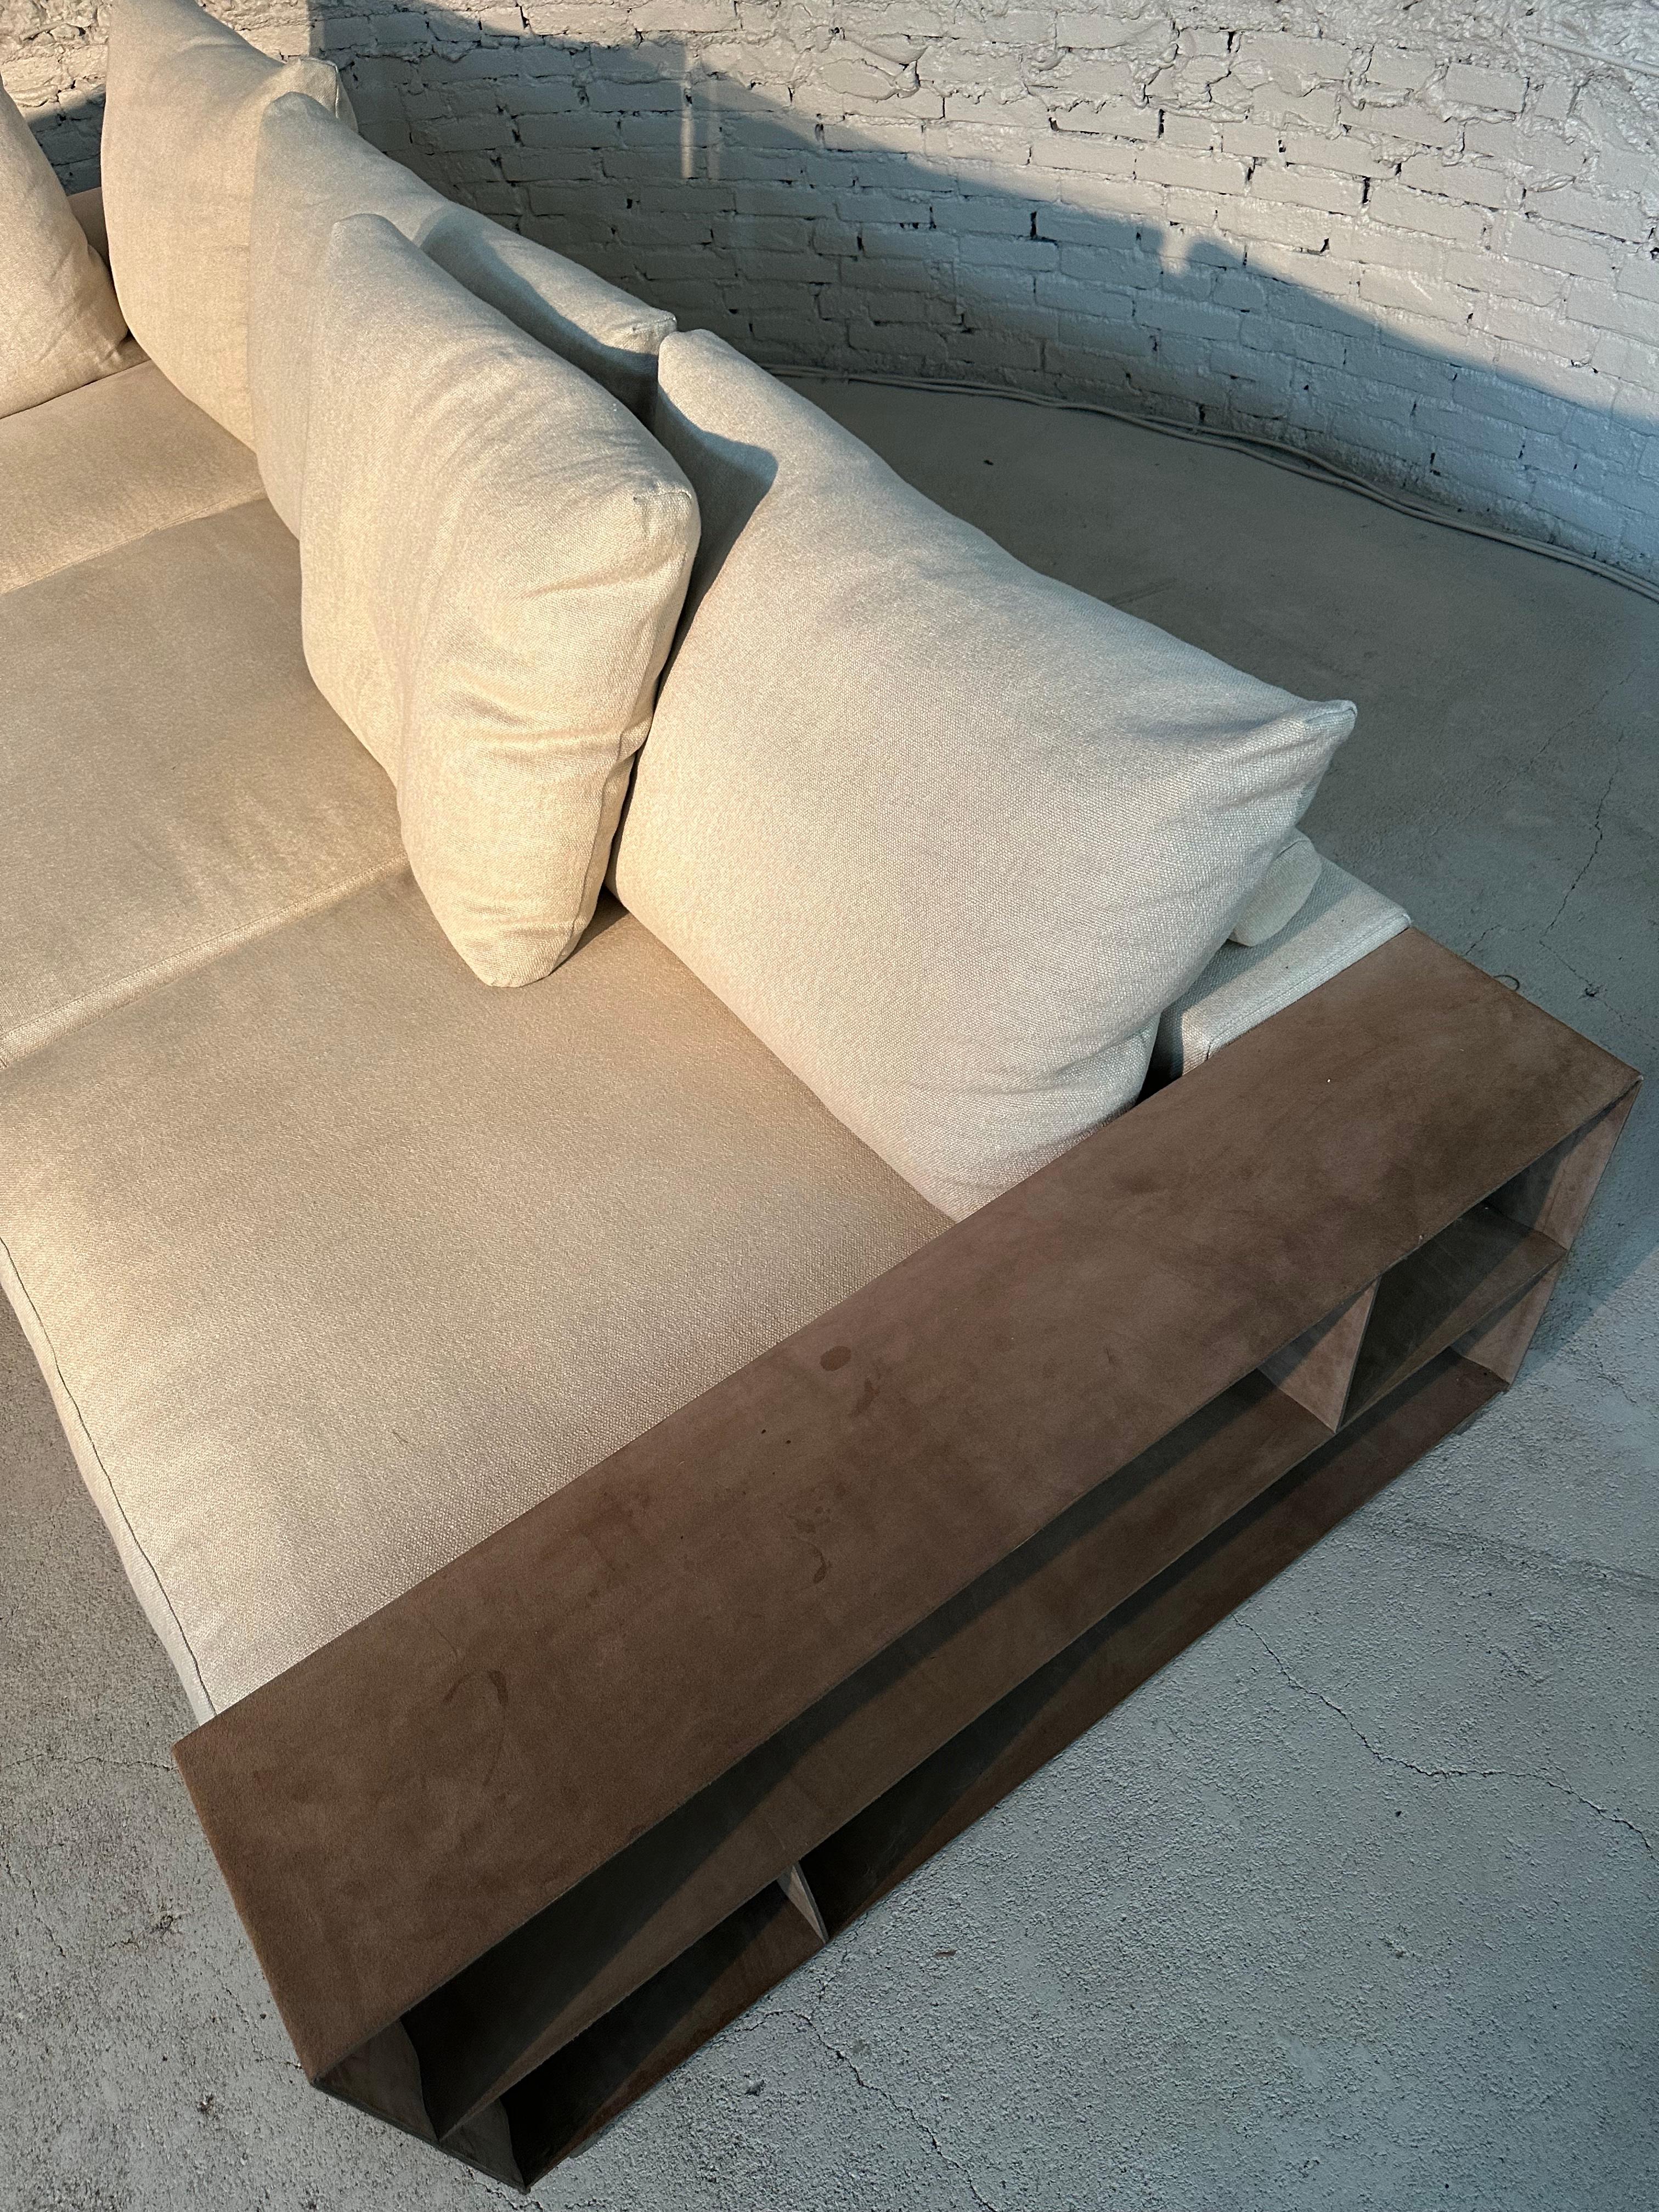 Le canapé Flexform Groundpiece est un design d'Antonio Citterio et il symbolise le confort ultime de Flexform. Il s'agit de l'une des icônes les plus connues de leur collection. Antonio Citterio a fait émerger la simplicité moderne, l'art et le